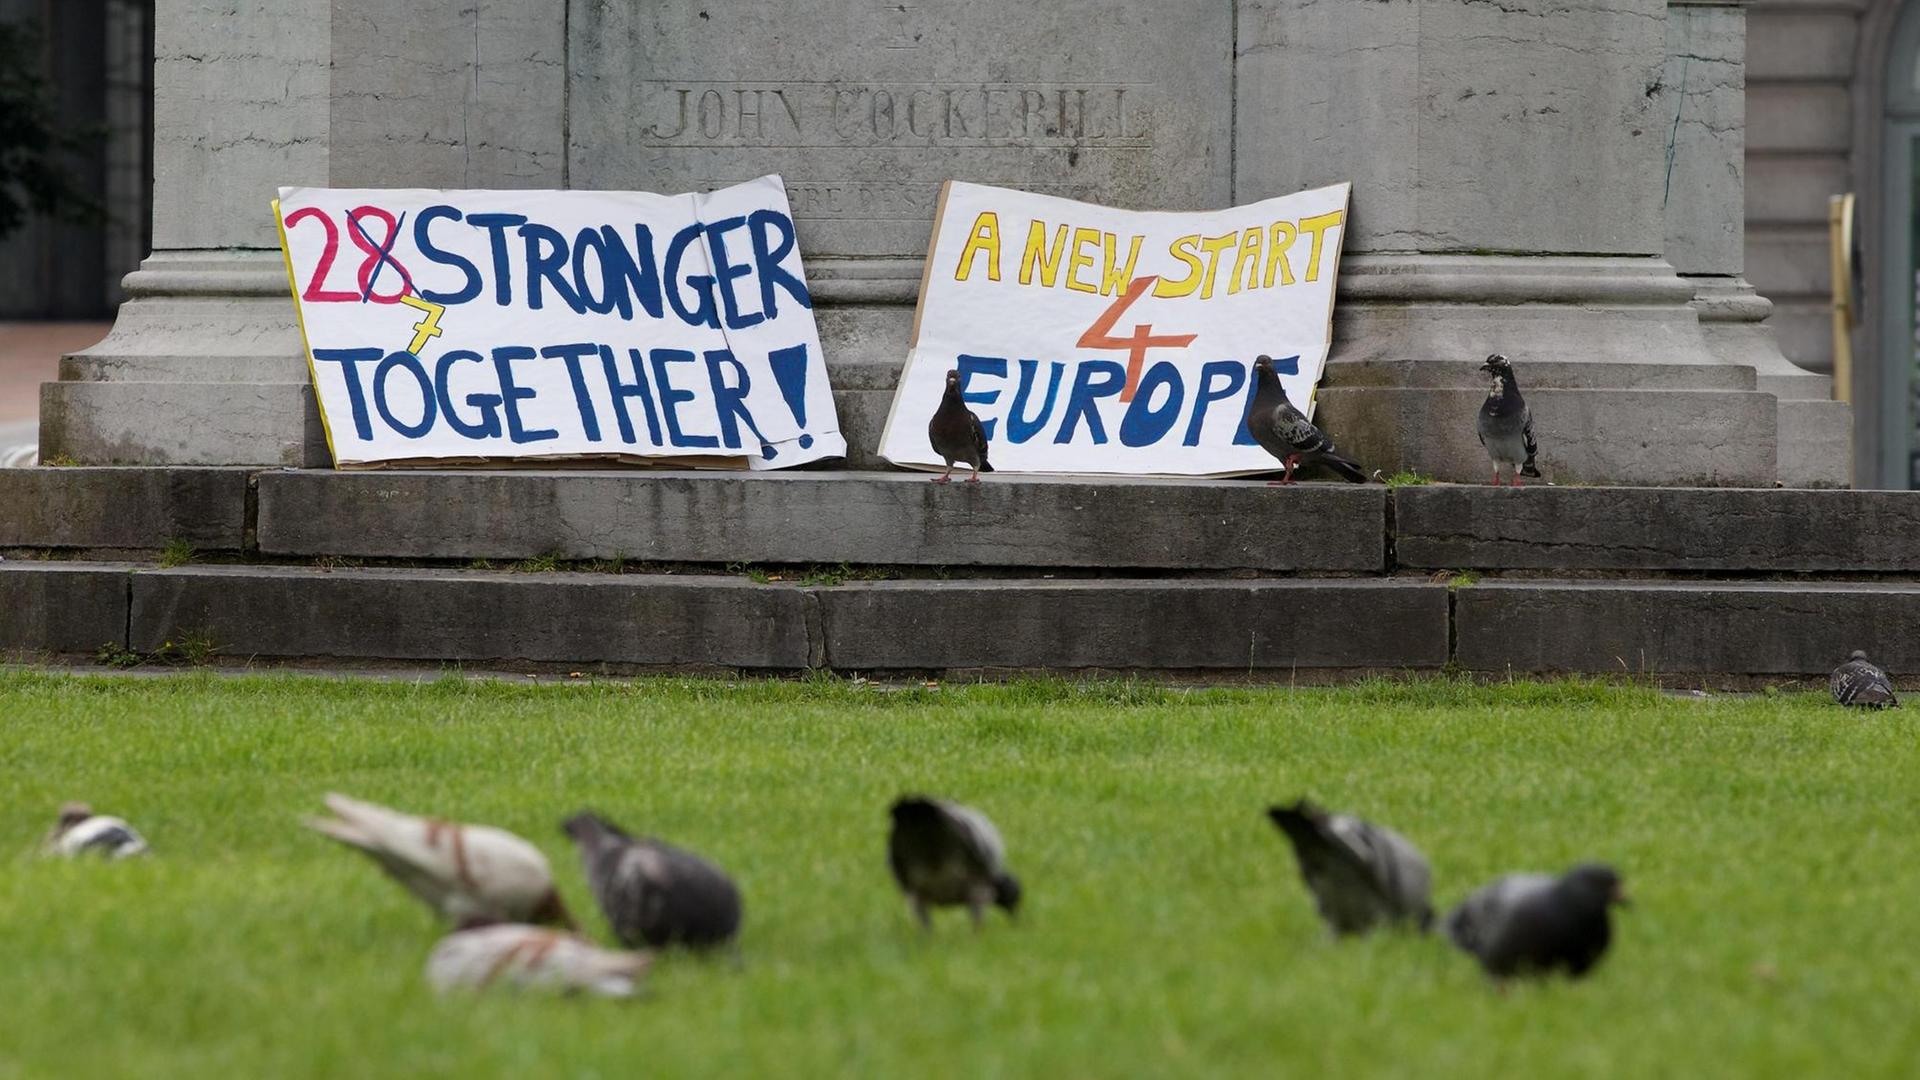 Nach dem Brexit-Referendum liegen zwei Plakate mit den Aufschriften "27 stronger together" und "A new start 4 Europe" vor einer Statue.